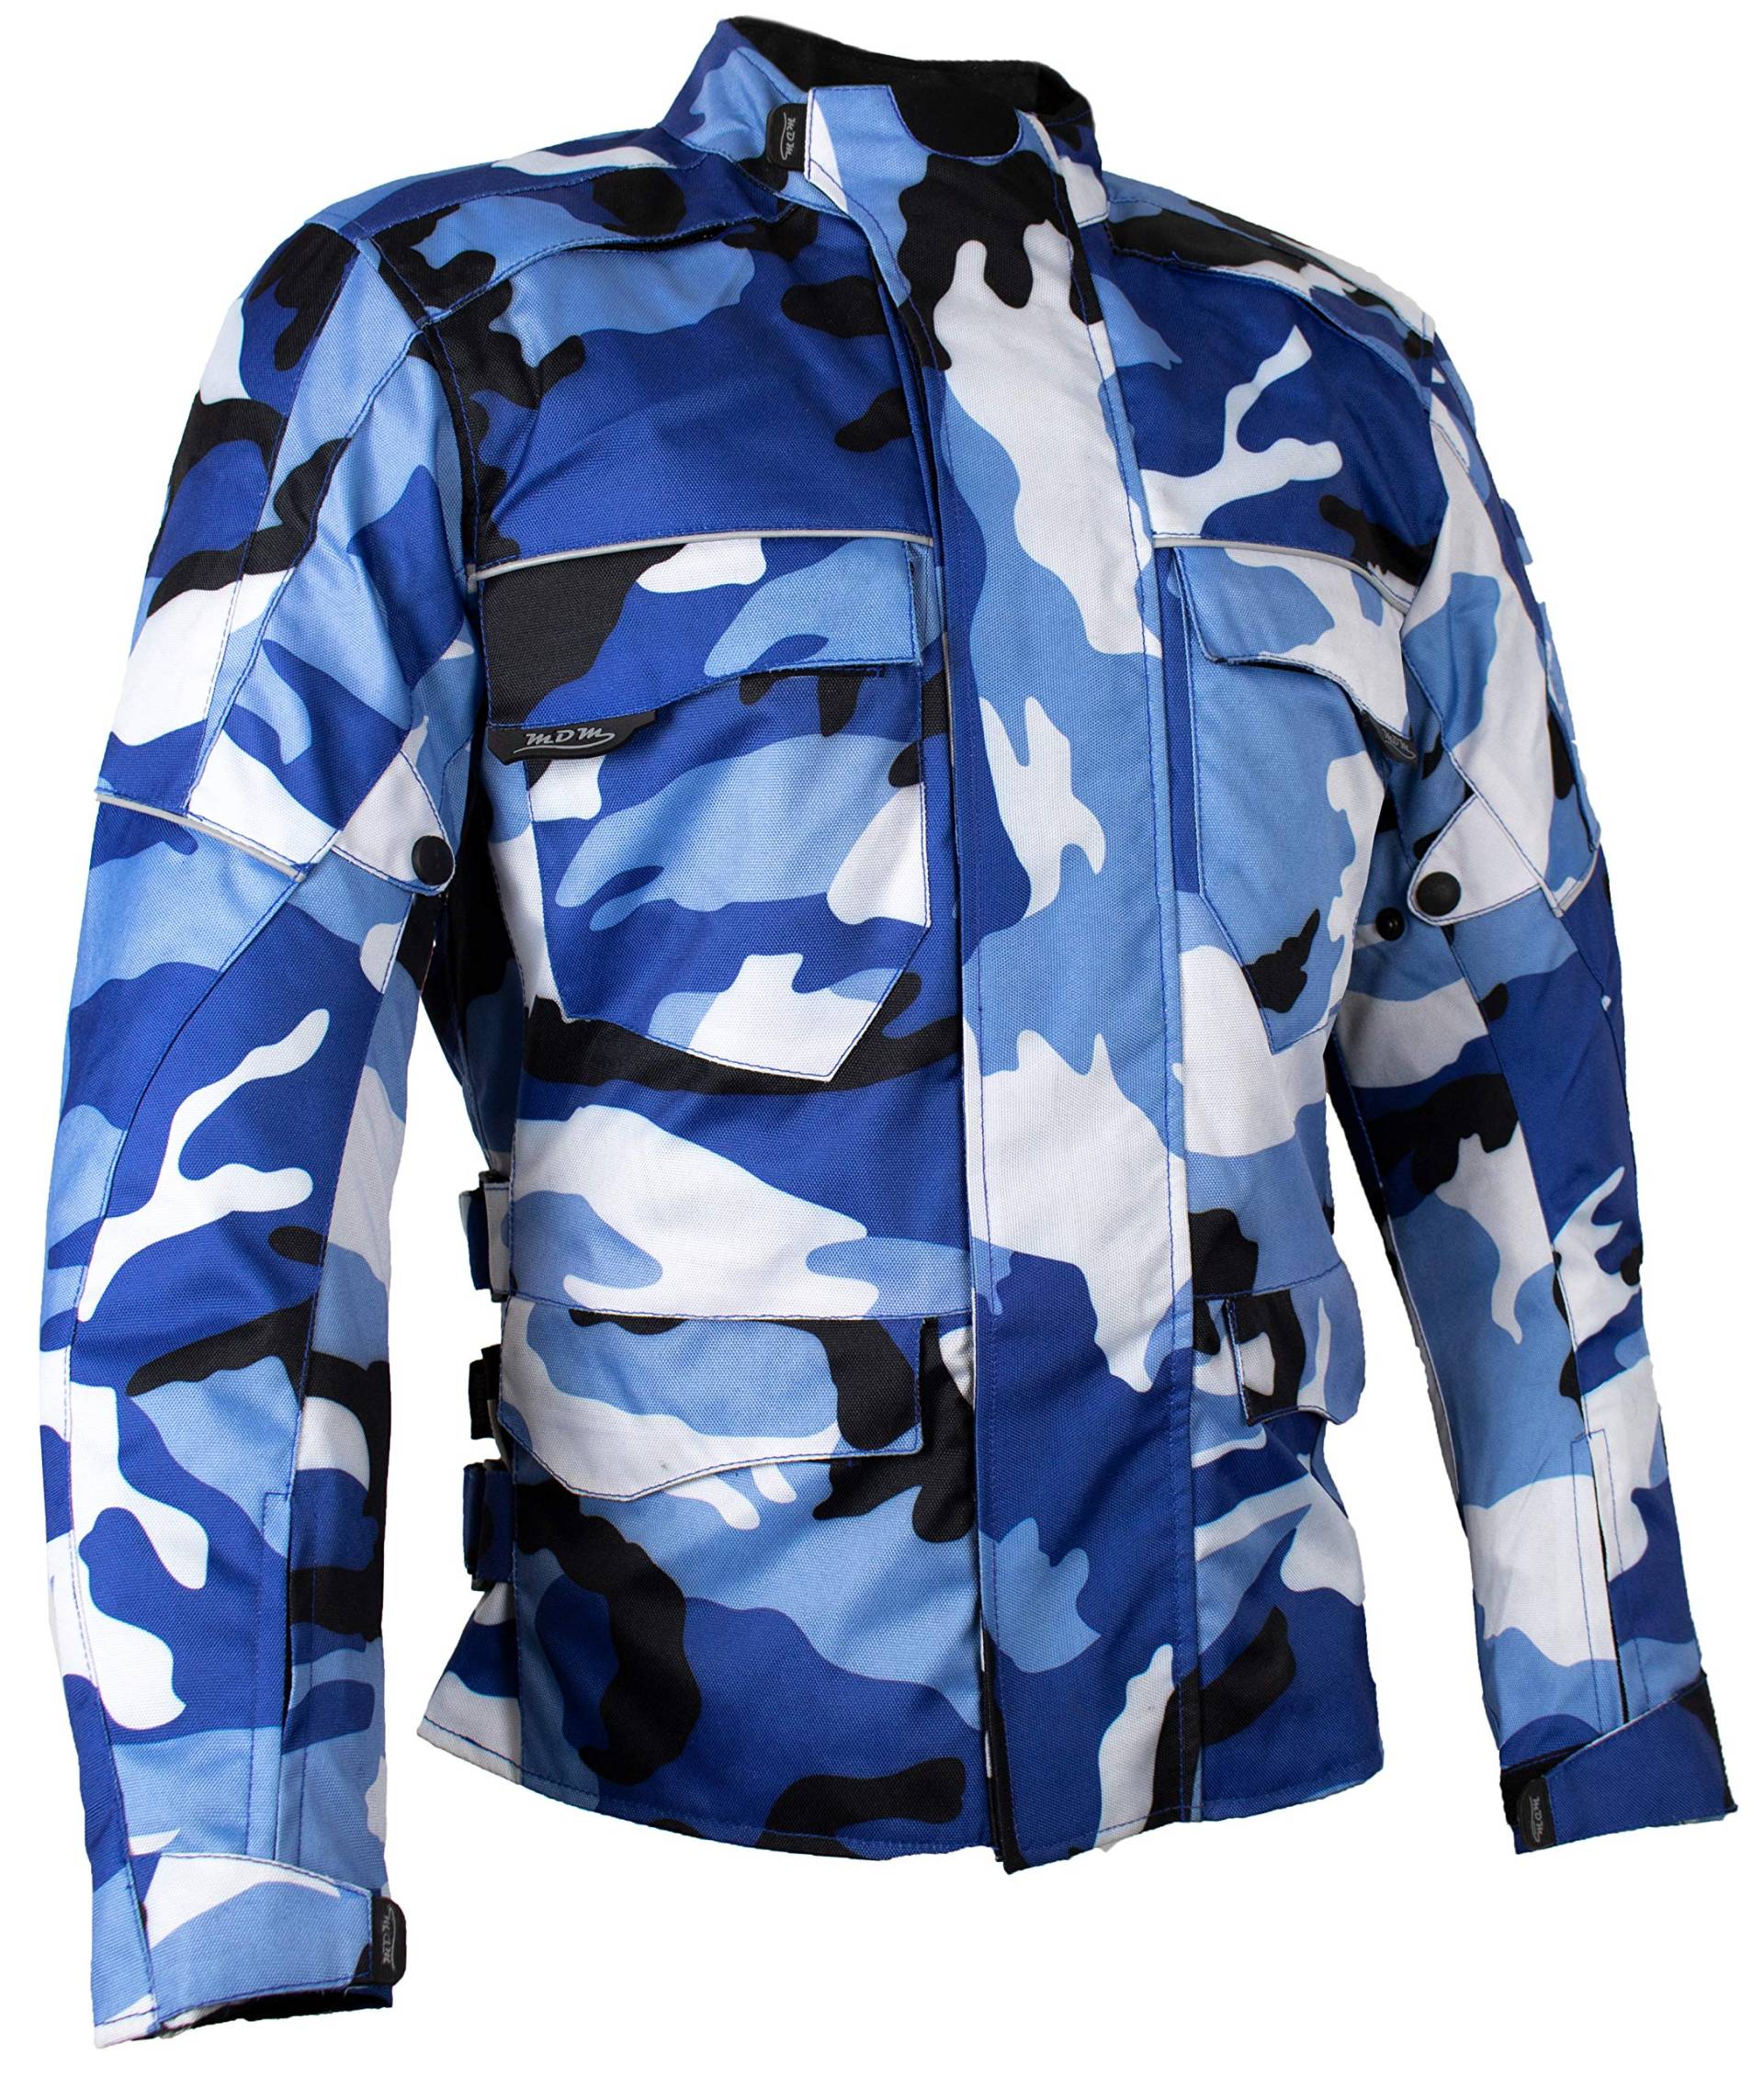 MDM Herren Motorrad Textil Jacke Motorradjacke Winddicht Wasserdicht Belüftet Camo Camouflage (4XL) von MDM